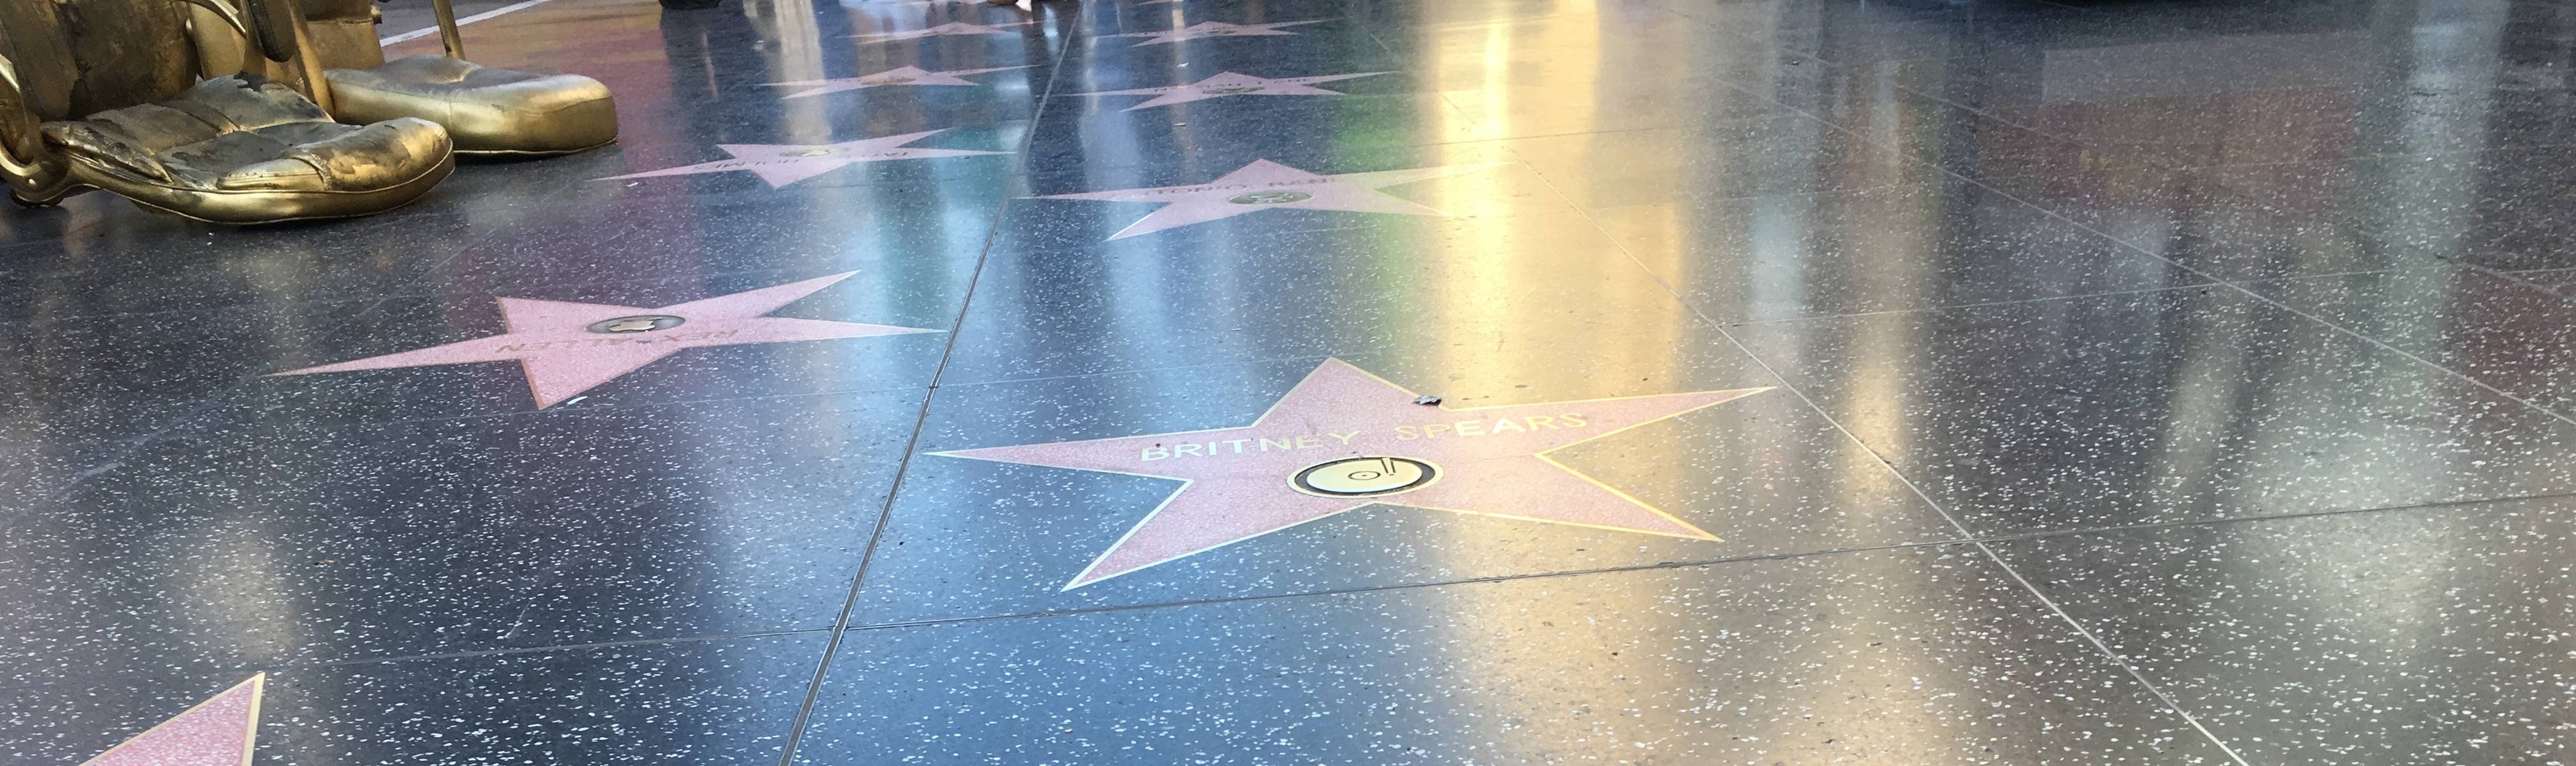 Hollywood walk